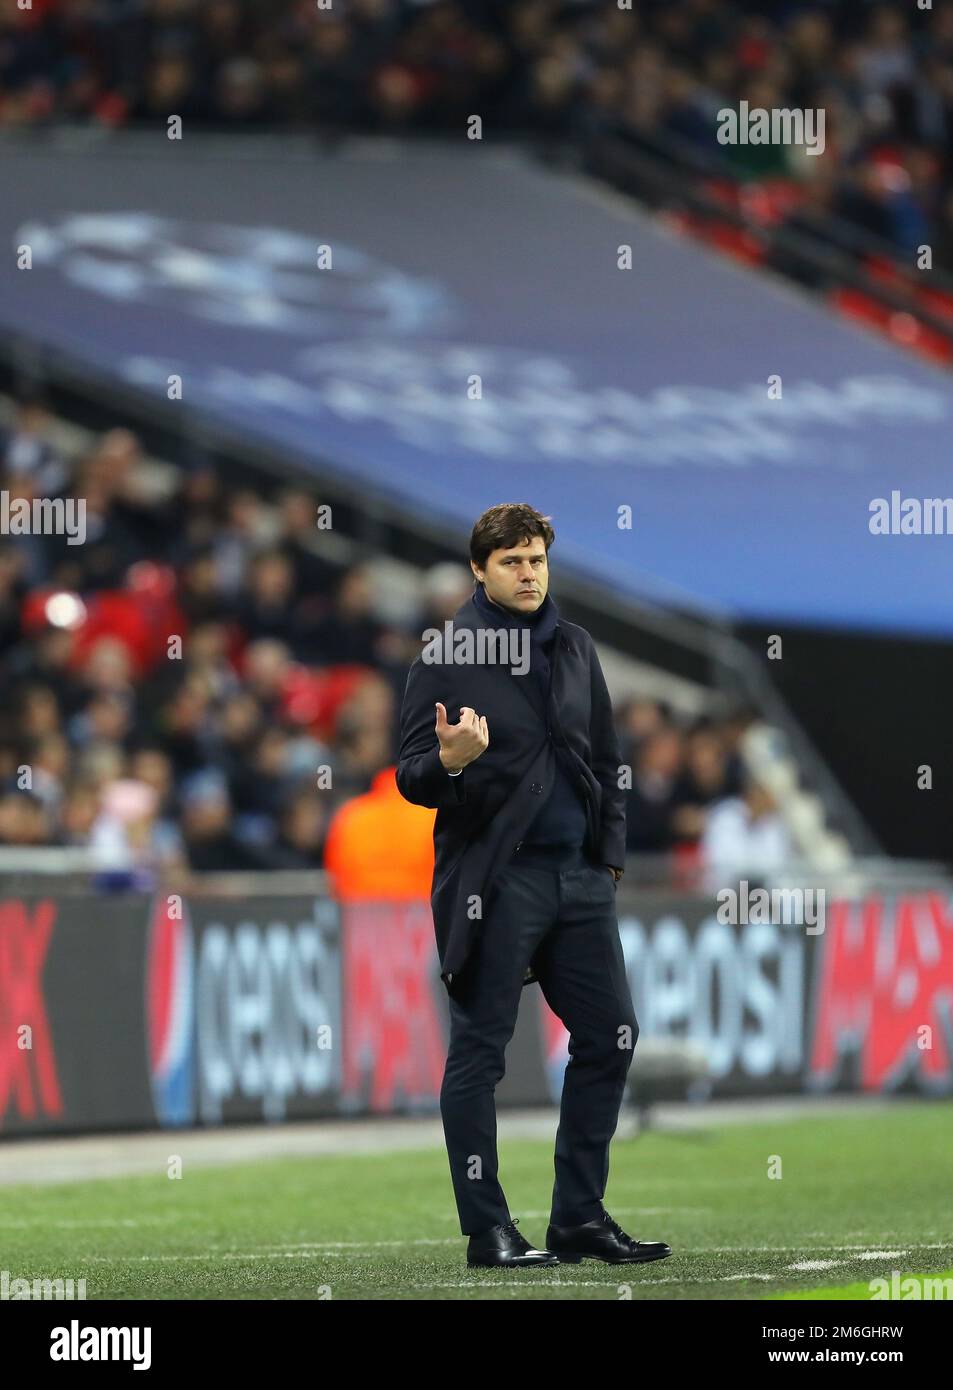 Manager of Tottenham Hotspur, Mauricio Pochettino - Tottenham Hotspur v CSKA Moscow, UEFA Champions League, Wembley Stadium, London - 7th December 2016. Stock Photo